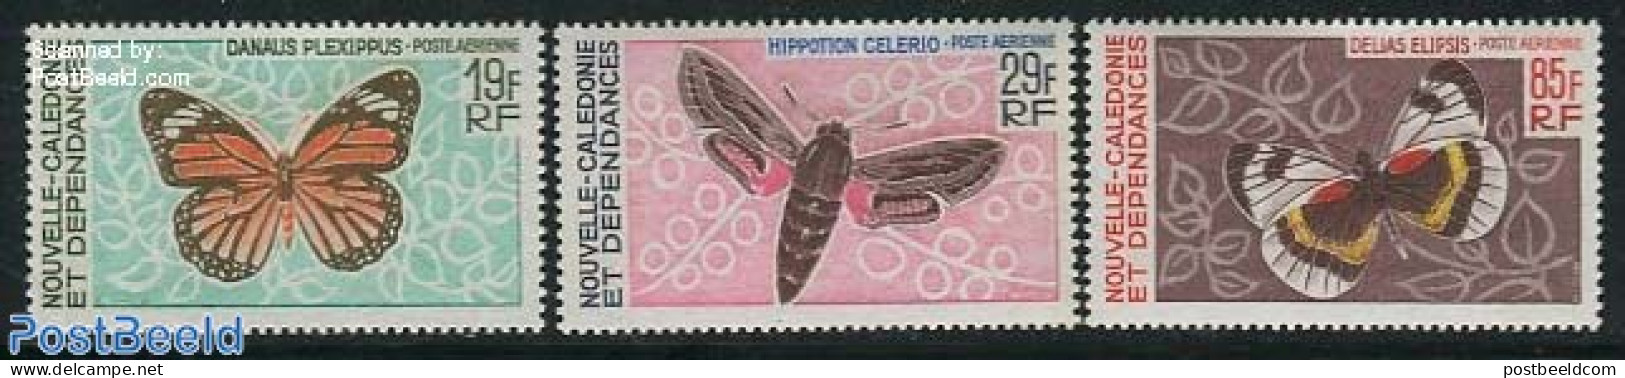 New Caledonia 1967 Butterflies 3v, Air Mail, Mint NH, Nature - Butterflies - Ongebruikt